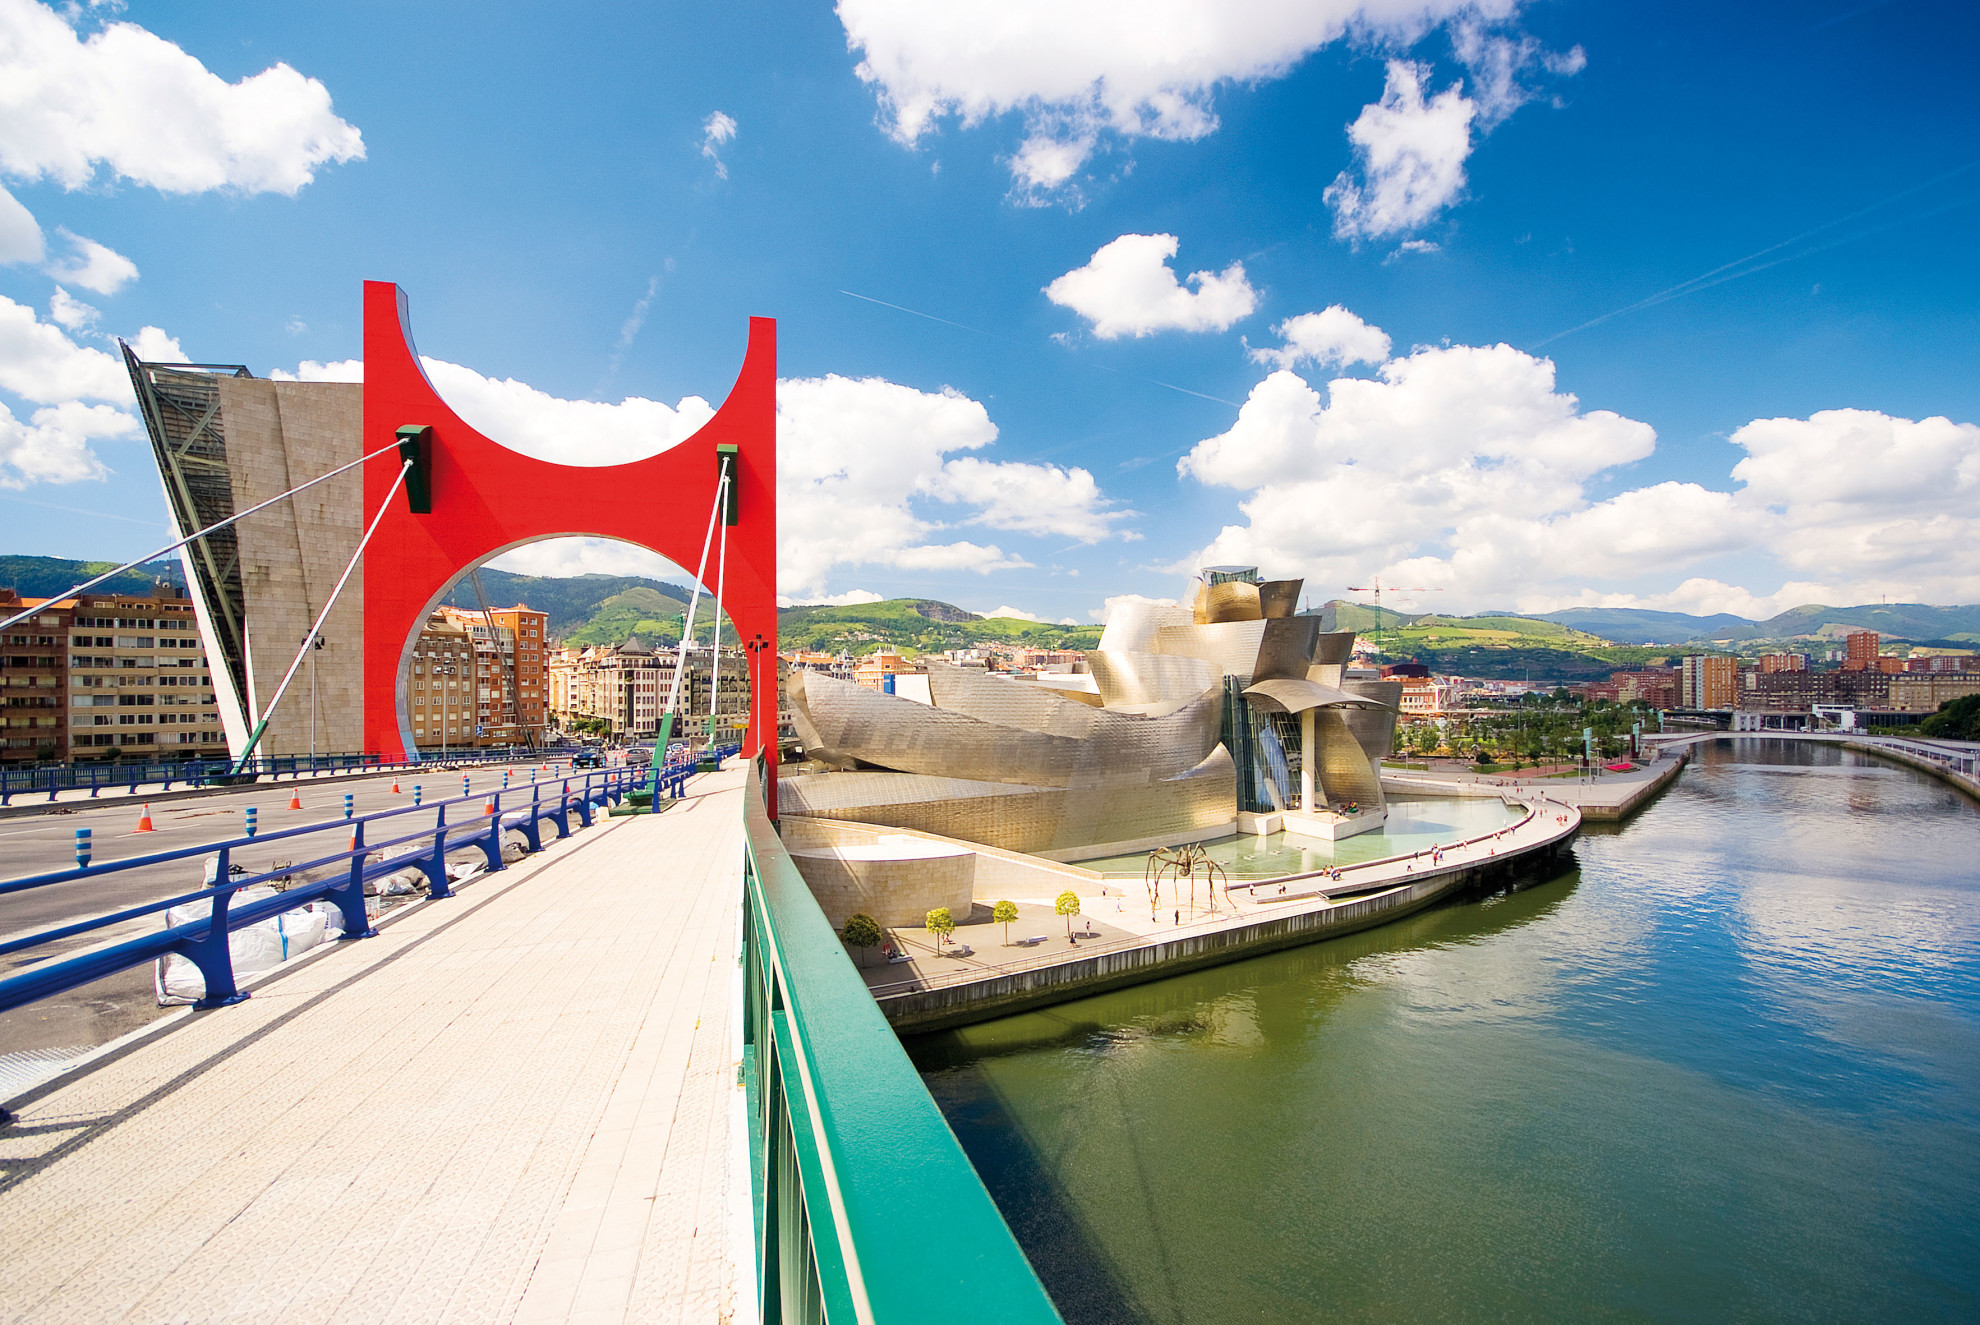 Overlooking the Guggenheim museum in Bilbao